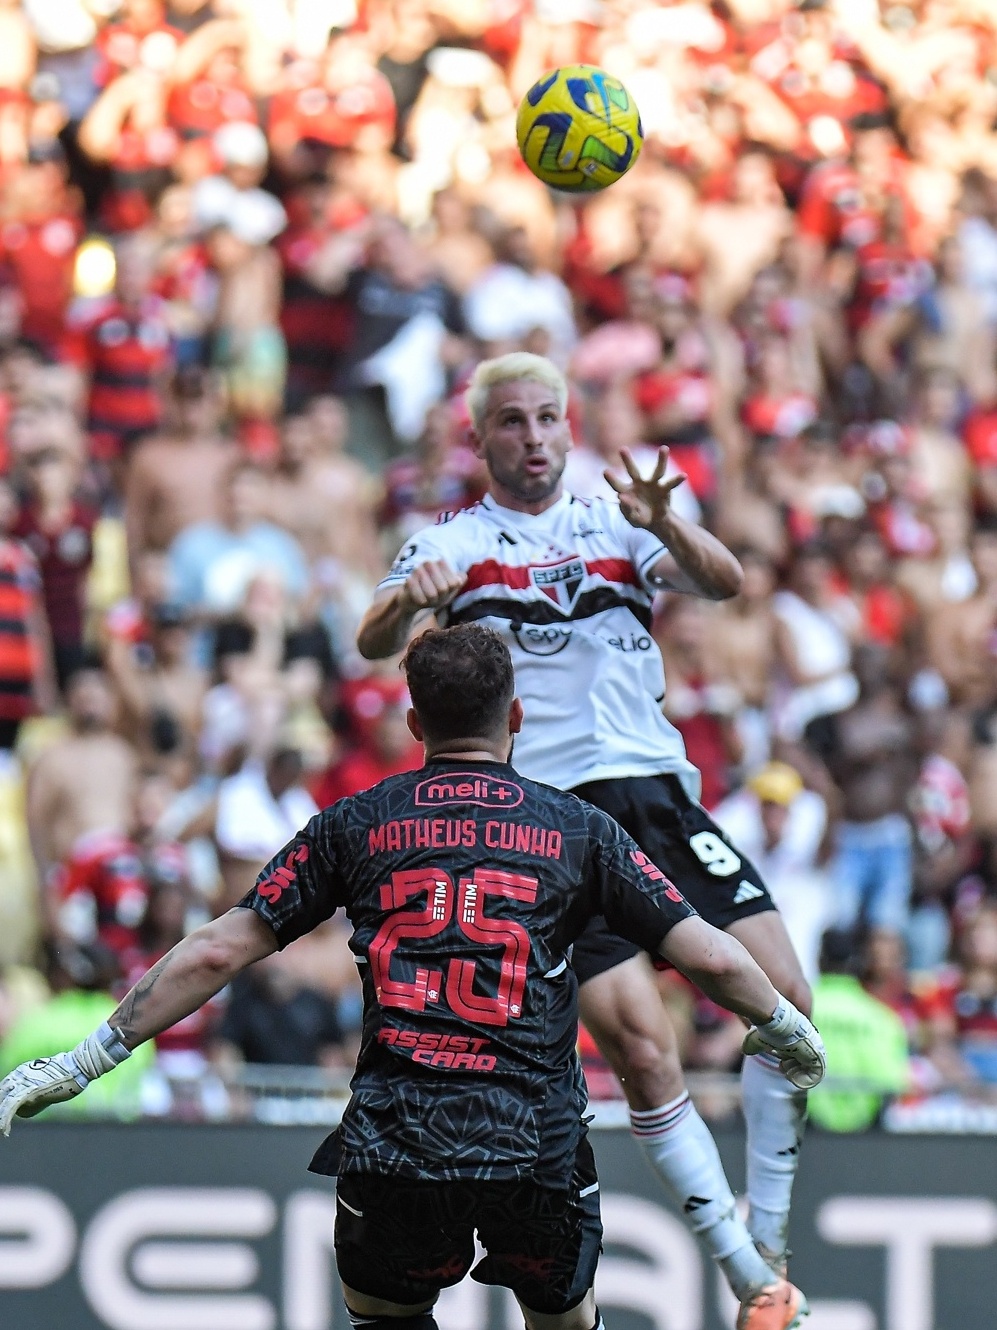 Faltam só 2 dias, Nação! 📒🖊 Já separa - Flamengo Esports